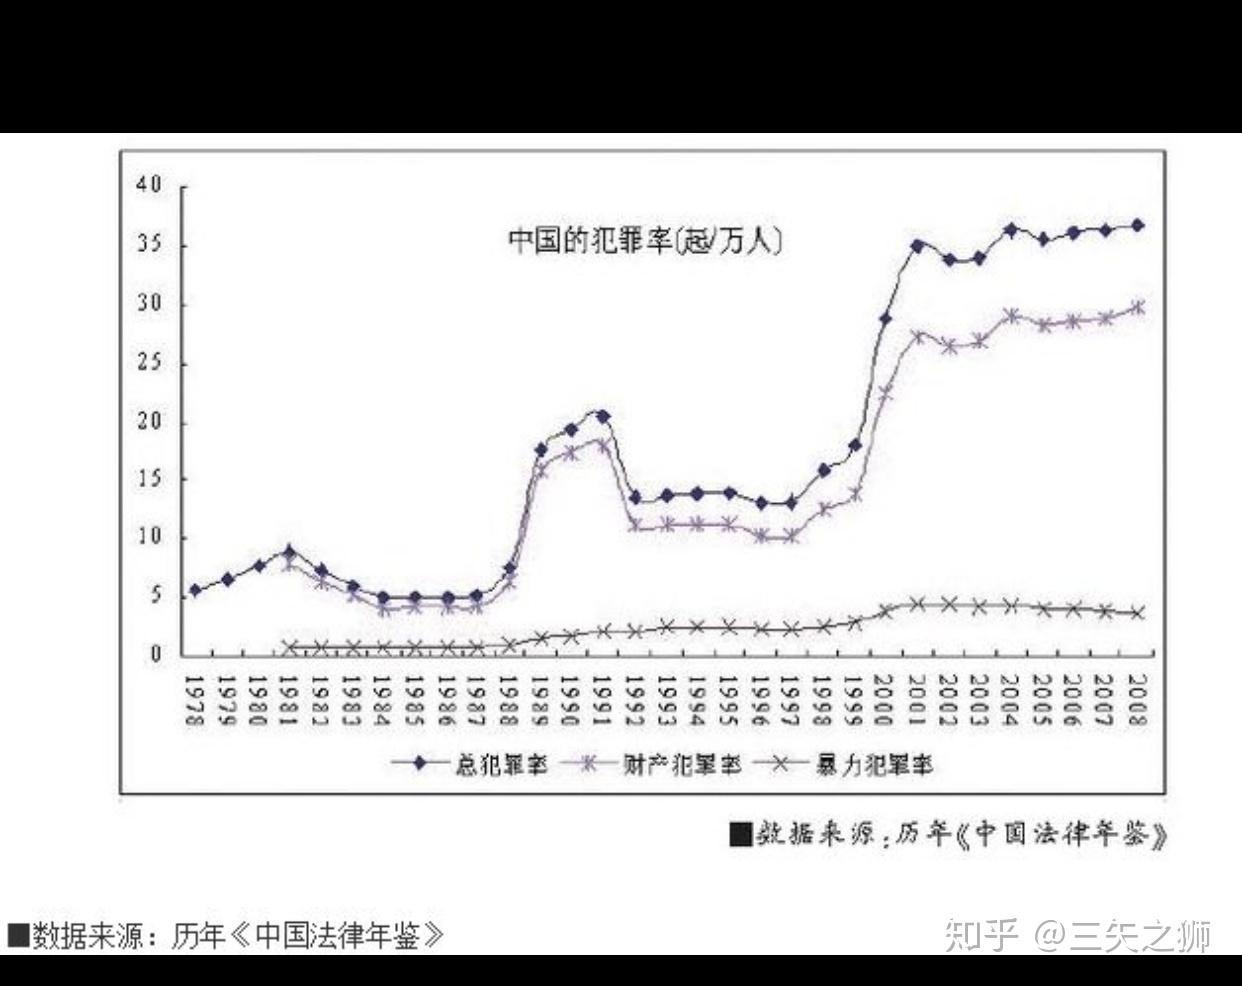 在中国犯罪率和过去相比是增长了还是减少了?